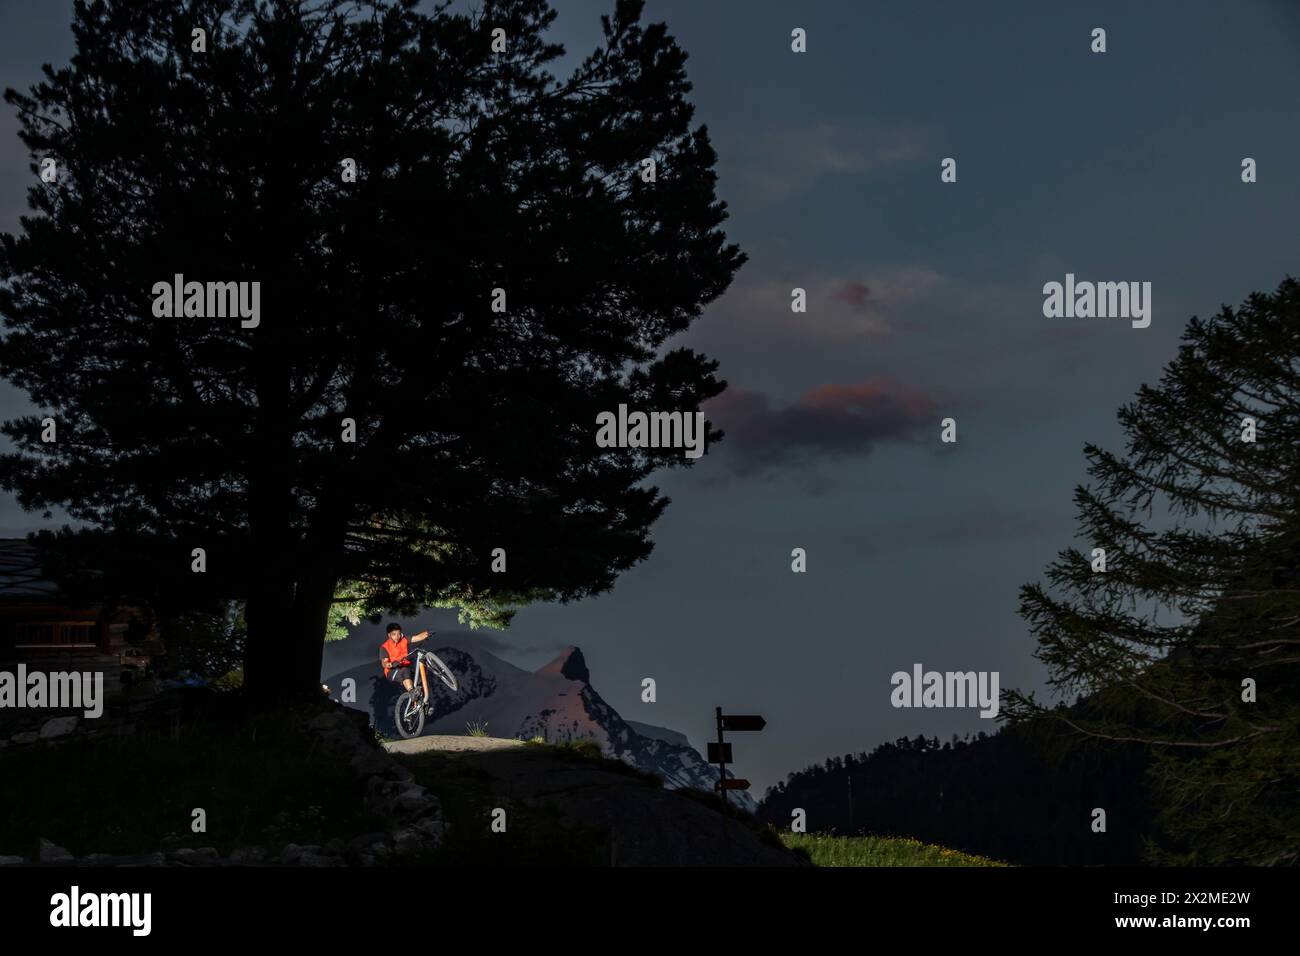 Ein Radfahrer ruht an einem Baum auf einem Bergweg während eines Sommerabends, wobei ein Scheinwerfer die Szene beleuchtet Stockfoto